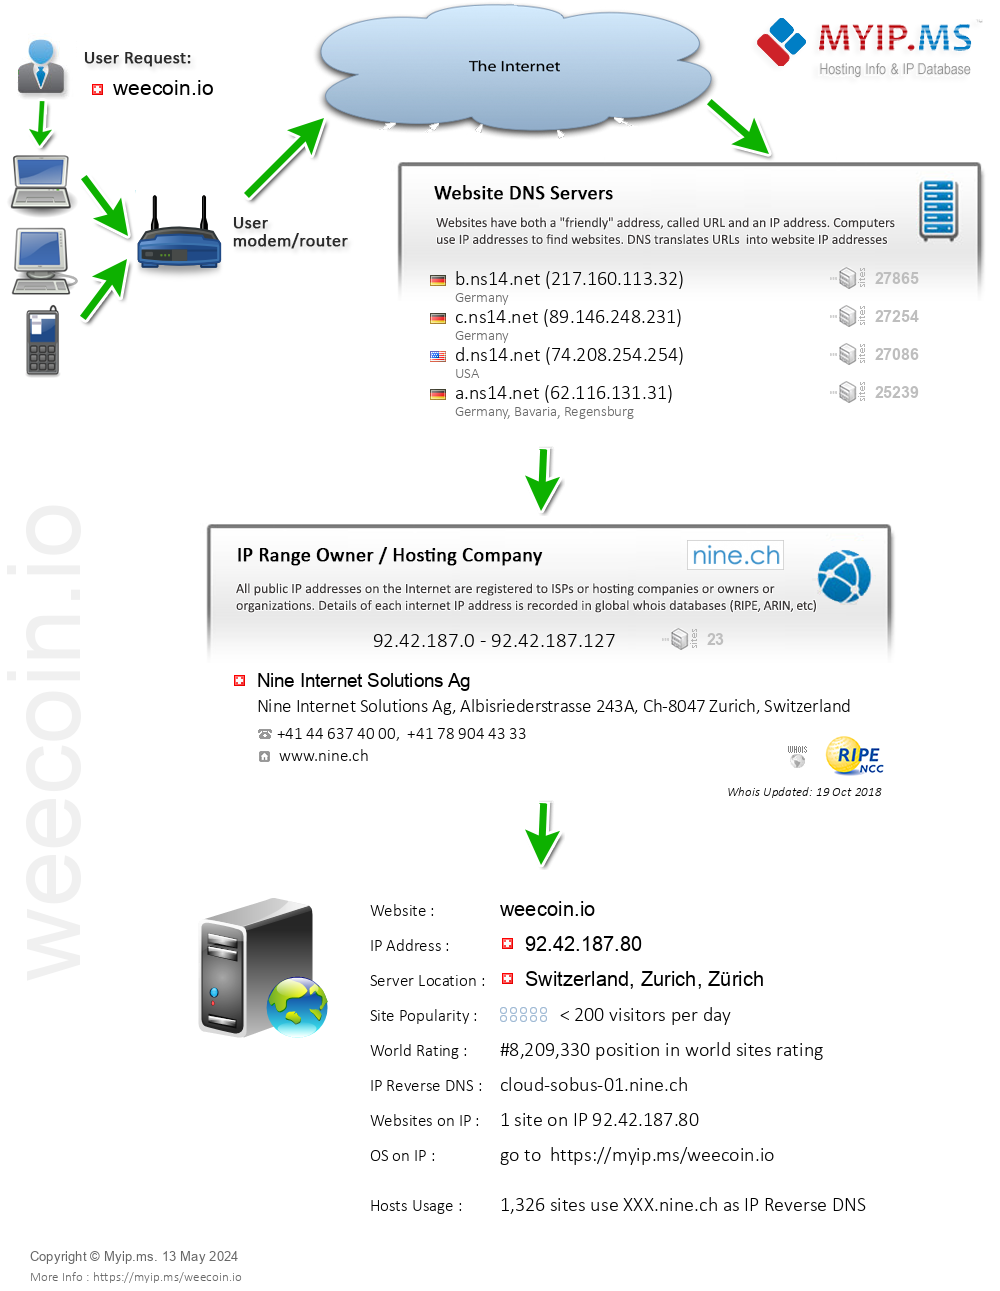 Weecoin.io - Website Hosting Visual IP Diagram